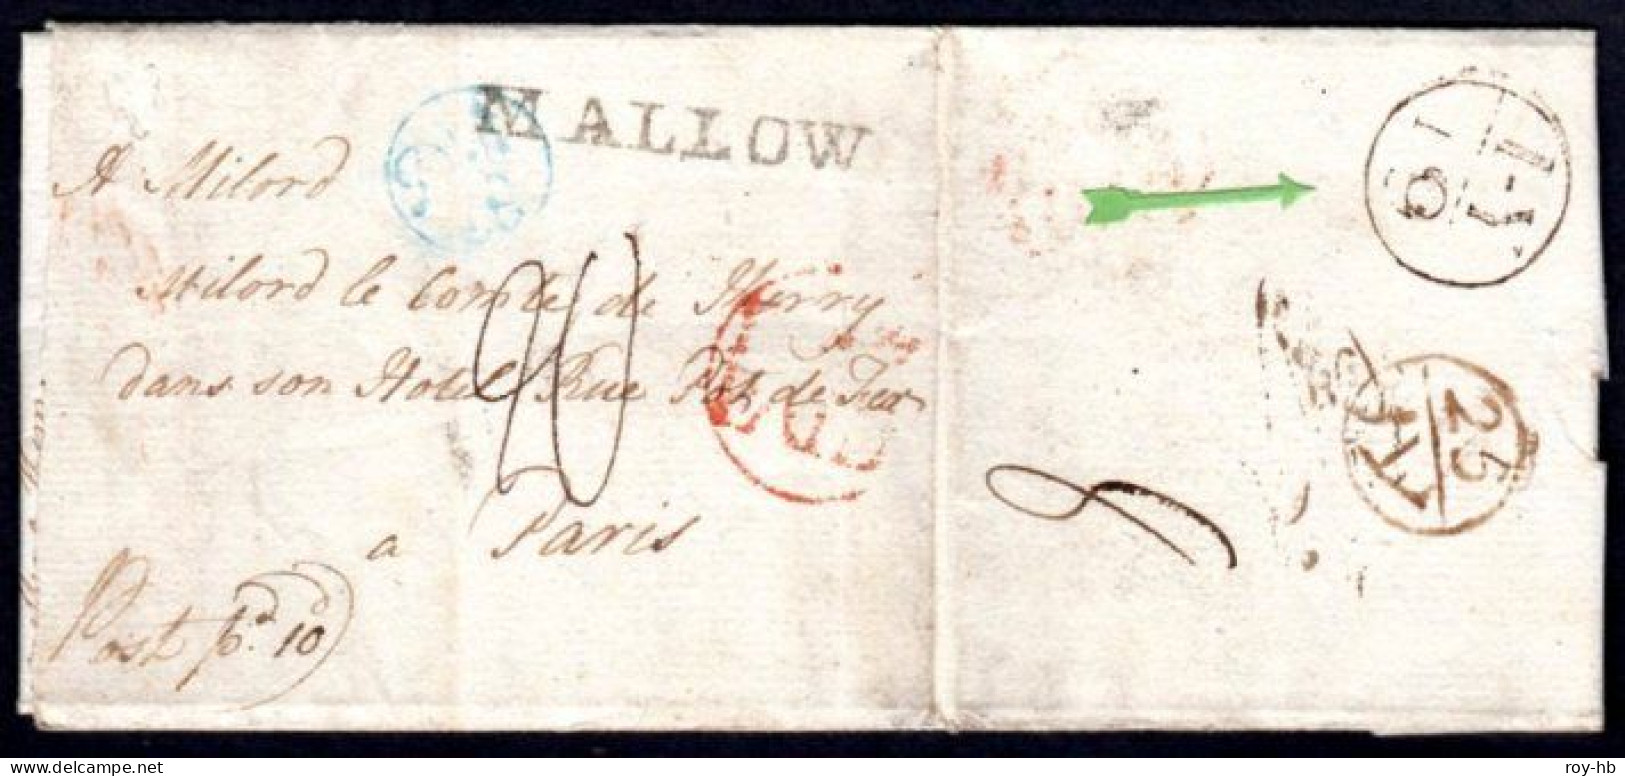 1782 Entire Letter To Paris With Very Fine MALLOW (light Filing Fold Through W), M/s Post Pd 10d. - Préphilatélie